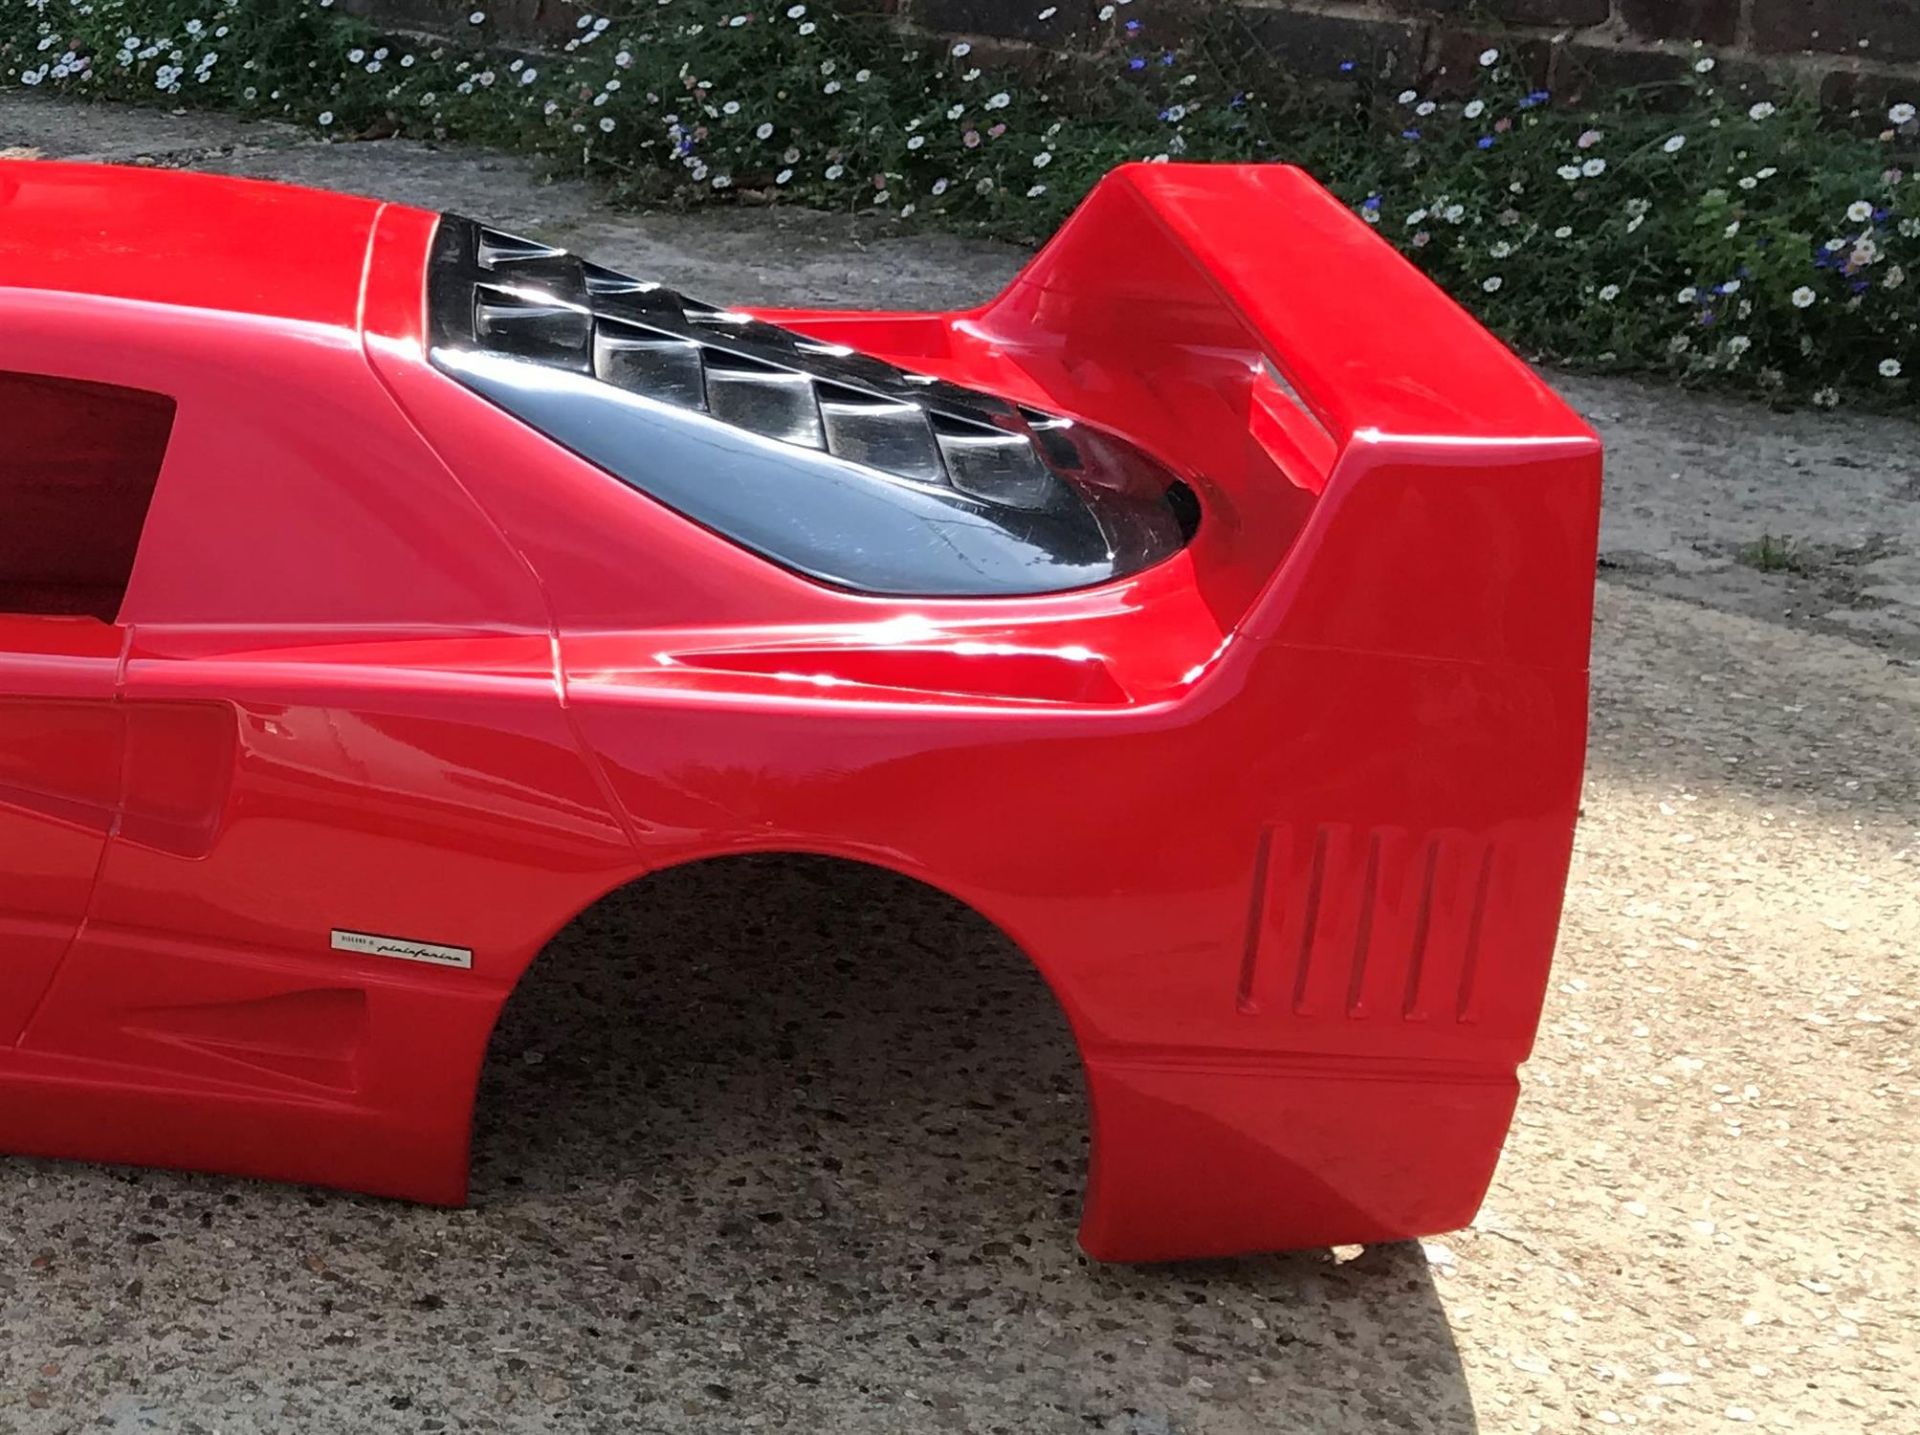 1/3 Scale 'Ferrari F40' Glassfibre Display Model - Image 4 of 8